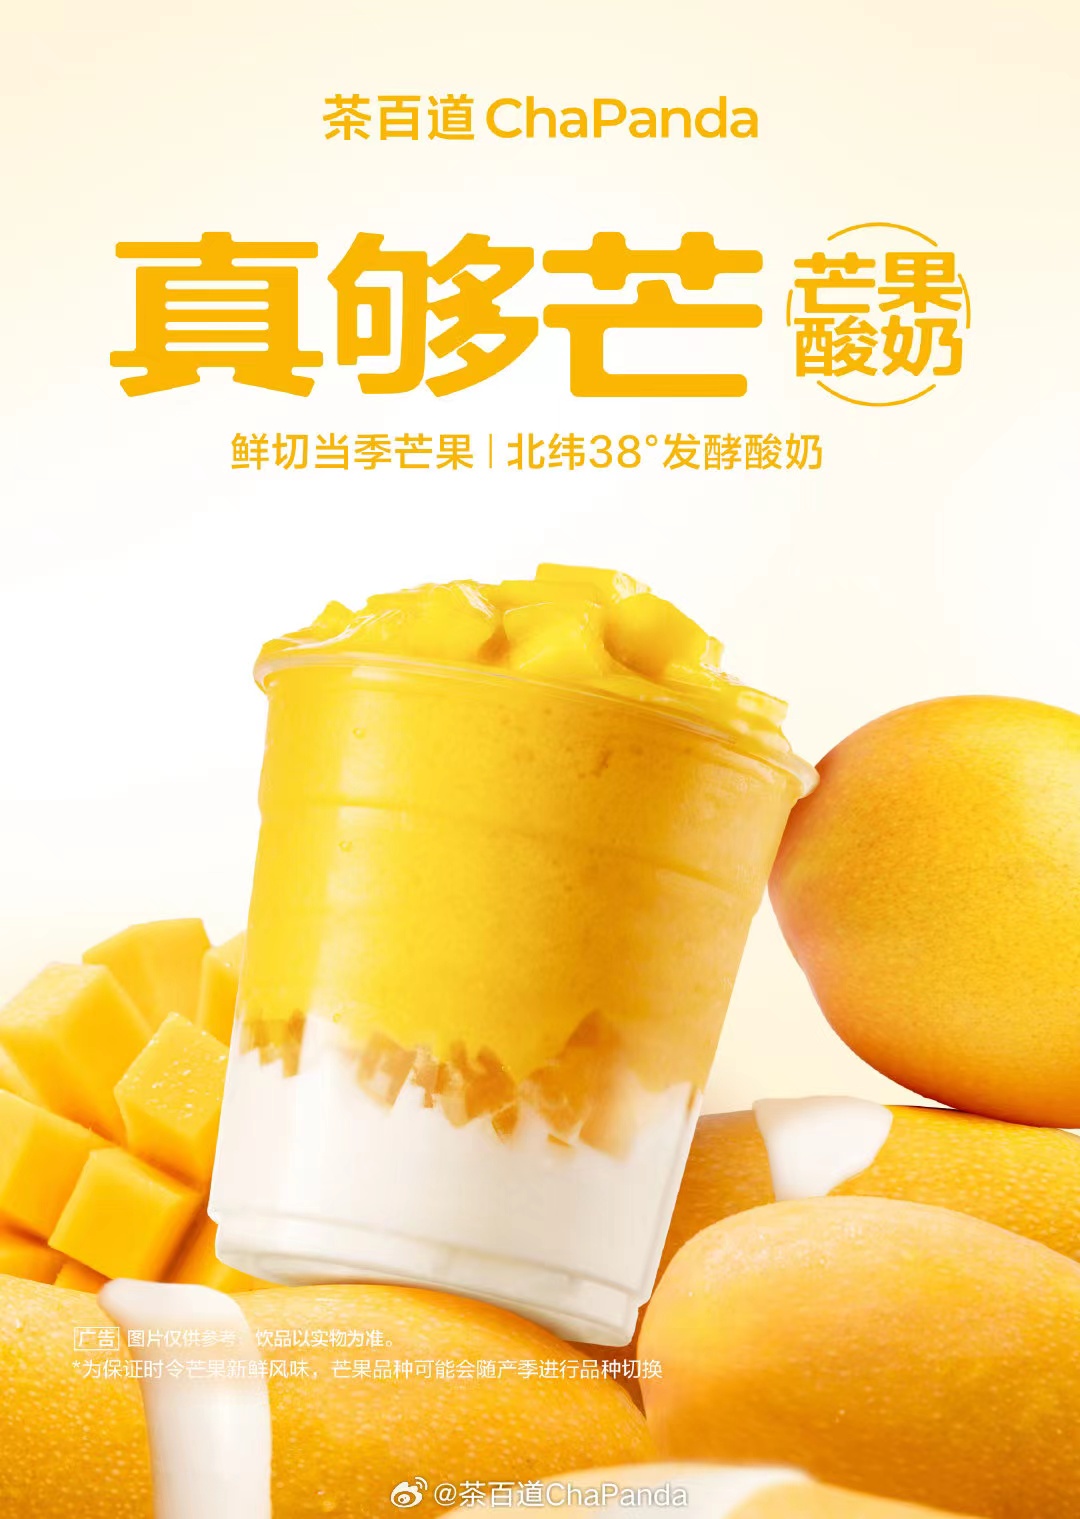 芒果酸奶图片大全-芒果酸奶高清图片下载-觅知网